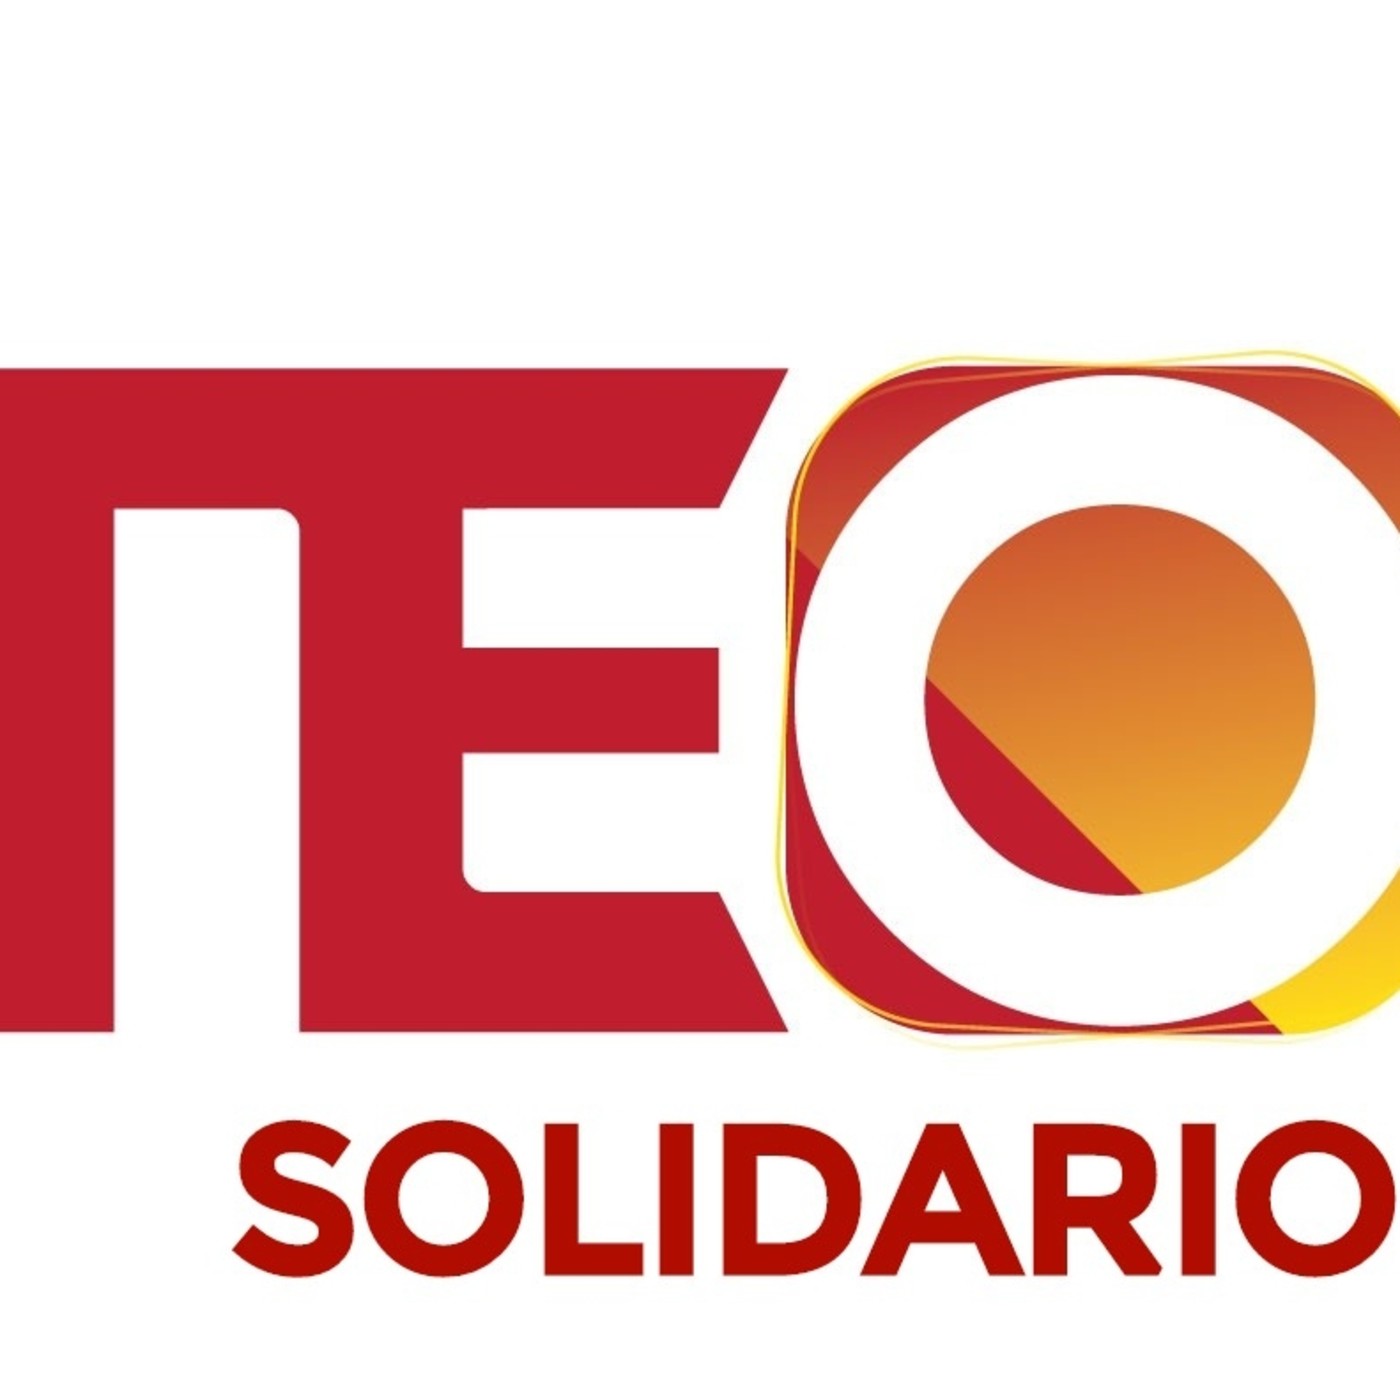 Neo Fm Solidario (Asociación Colibrí) 25 -05 - 2022